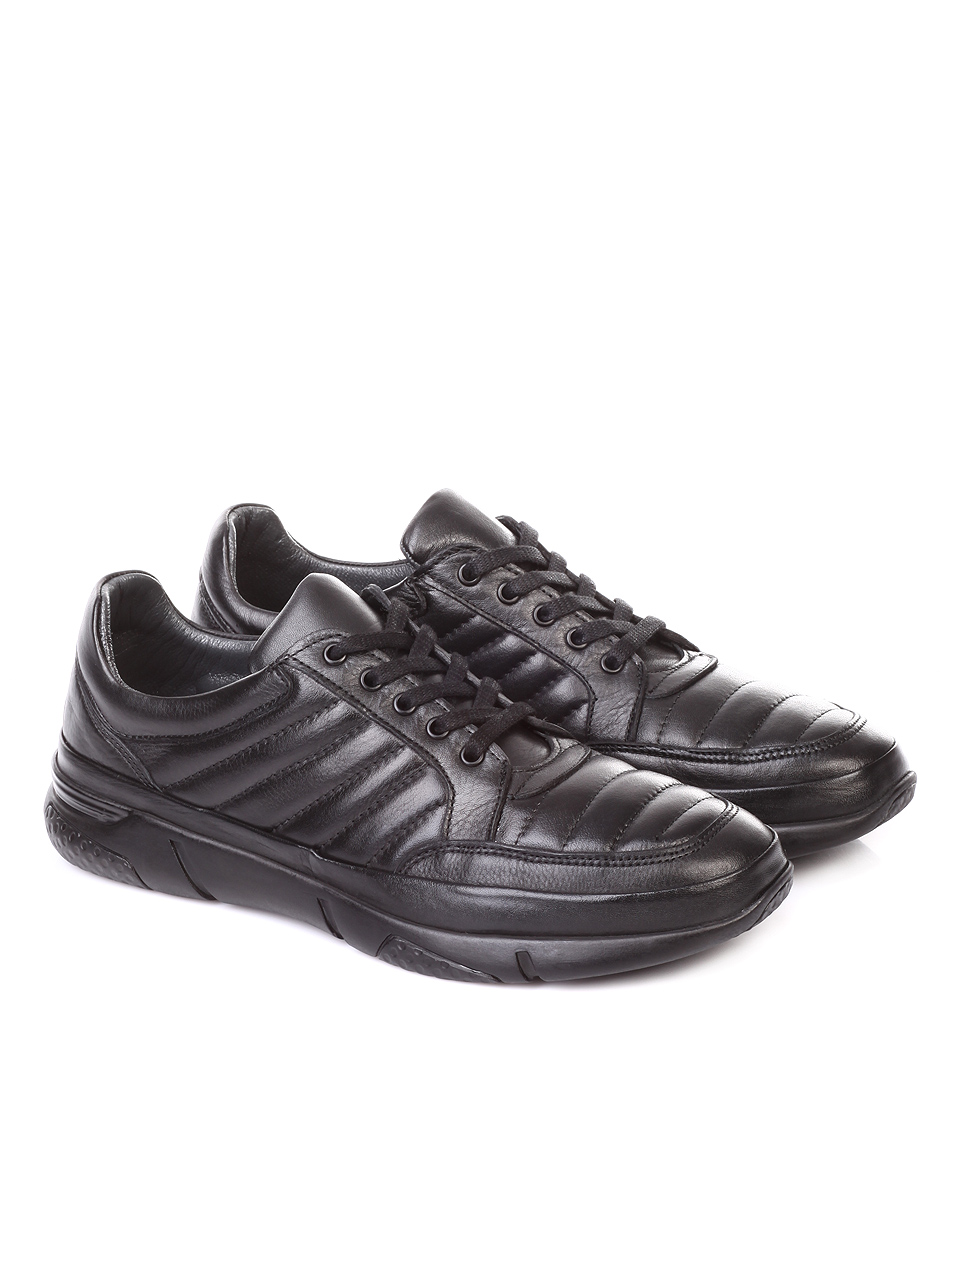 Ежедневни мъжки обувки от естествена кожа 7AT-181101 black